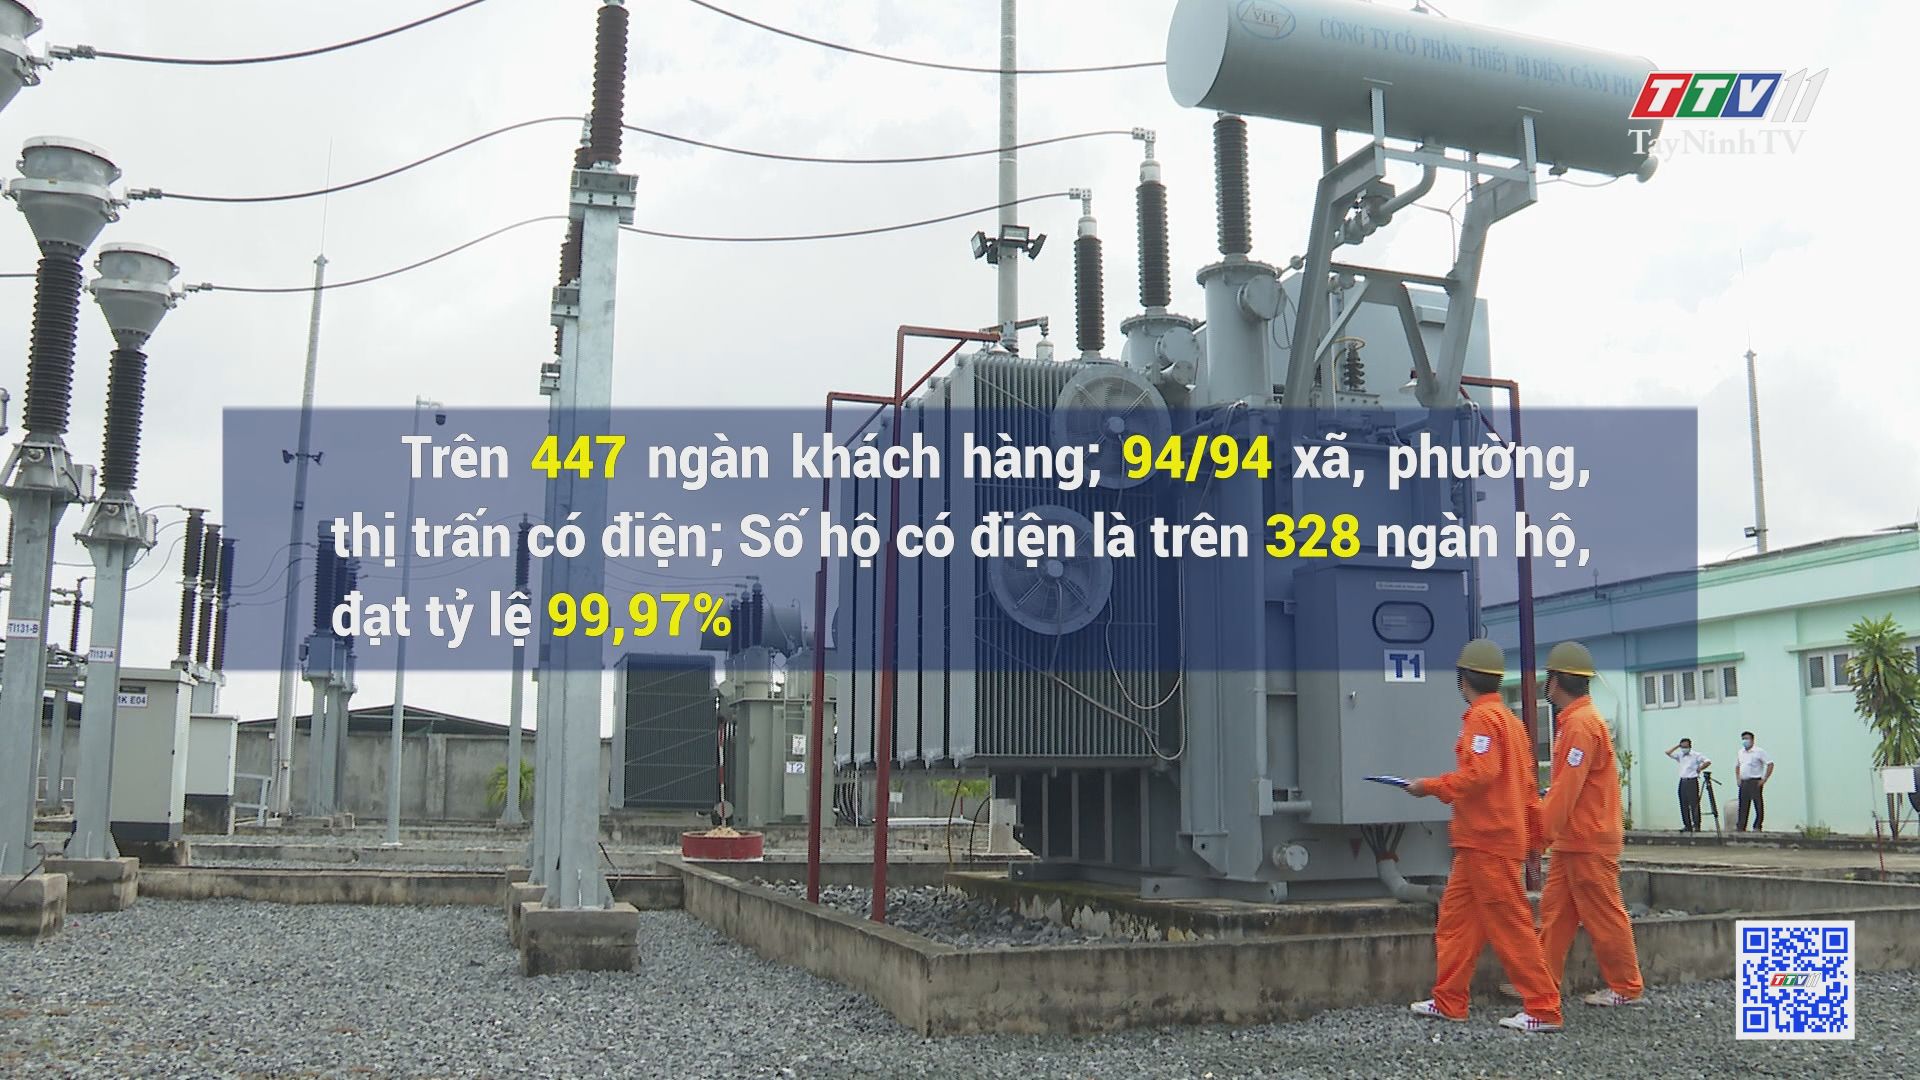 Lợi ích thiết thực từ công tác đầu tư xây dựng và sửa chữa lưới điện 9 tháng 2021 | ĐIỆN VÀ CUỘC SỐNG | TayNinhTV